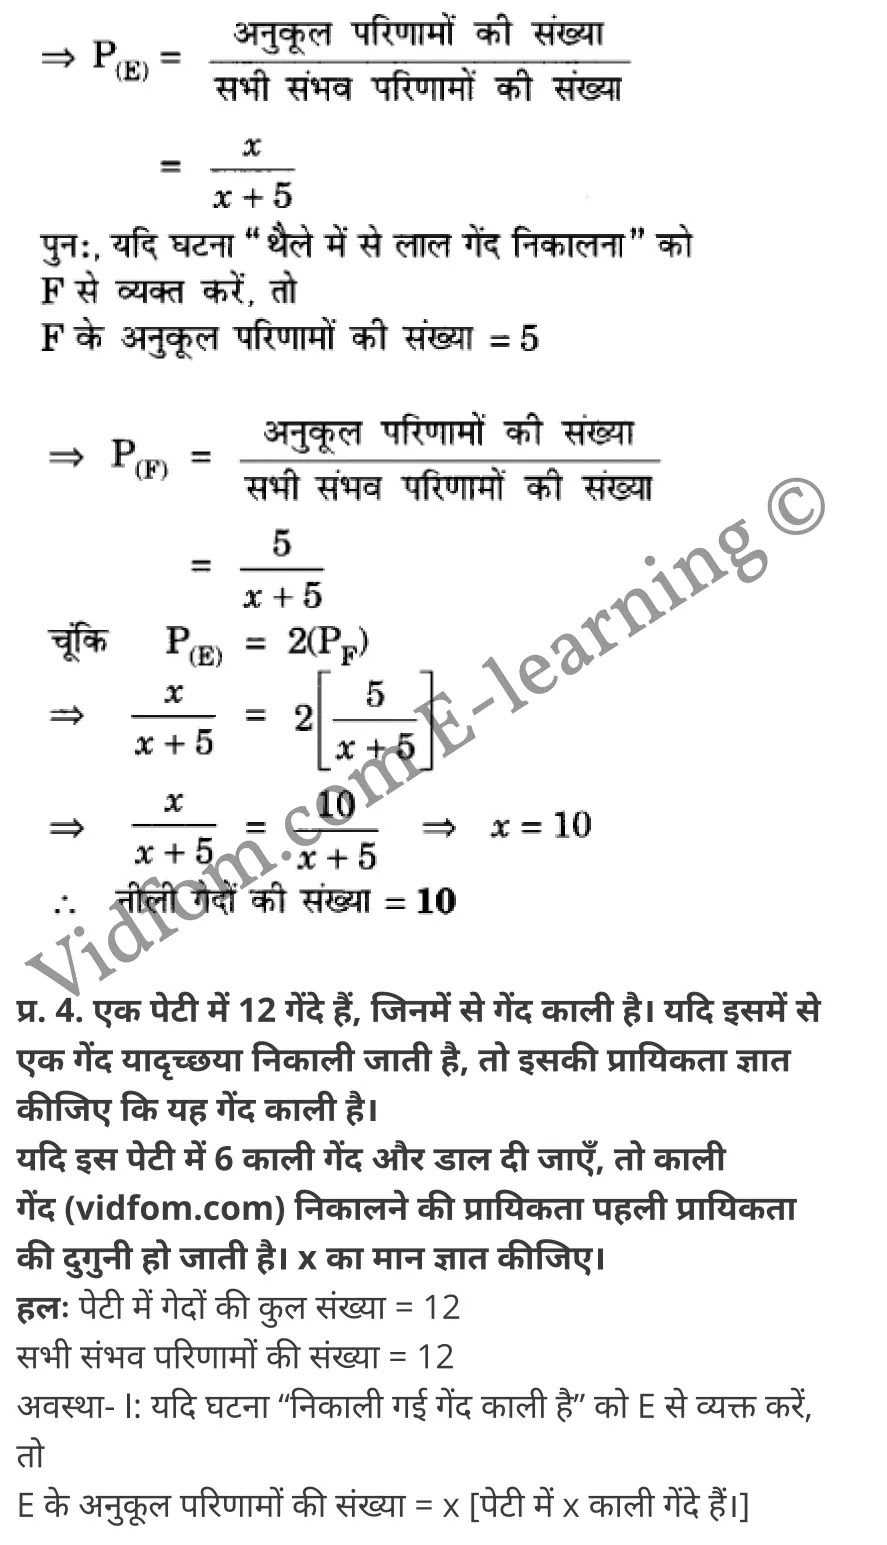 कक्षा 10 गणित  के नोट्स  हिंदी में एनसीईआरटी समाधान,     class 10 Maths chapter 15,   class 10 Maths chapter 15 ncert solutions in Maths,  class 10 Maths chapter 15 notes in hindi,   class 10 Maths chapter 15 question answer,   class 10 Maths chapter 15 notes,   class 10 Maths chapter 15 class 10 Maths  chapter 15 in  hindi,    class 10 Maths chapter 15 important questions in  hindi,   class 10 Maths hindi  chapter 15 notes in hindi,   class 10 Maths  chapter 15 test,   class 10 Maths  chapter 15 class 10 Maths  chapter 15 pdf,   class 10 Maths  chapter 15 notes pdf,   class 10 Maths  chapter 15 exercise solutions,  class 10 Maths  chapter 15,  class 10 Maths  chapter 15 notes study rankers,  class 10 Maths  chapter 15 notes,   class 10 Maths hindi  chapter 15 notes,    class 10 Maths   chapter 15  class 10  notes pdf,  class 10 Maths  chapter 15 class 10  notes  ncert,  class 10 Maths  chapter 15 class 10 pdf,   class 10 Maths  chapter 15  book,   class 10 Maths  chapter 15 quiz class 10  ,    10  th class 10 Maths chapter 15  book up board,   up board 10  th class 10 Maths chapter 15 notes,  class 10 Maths,   class 10 Maths ncert solutions in Maths,   class 10 Maths notes in hindi,   class 10 Maths question answer,   class 10 Maths notes,  class 10 Maths class 10 Maths  chapter 15 in  hindi,    class 10 Maths important questions in  hindi,   class 10 Maths notes in hindi,    class 10 Maths test,  class 10 Maths class 10 Maths  chapter 15 pdf,   class 10 Maths notes pdf,   class 10 Maths exercise solutions,   class 10 Maths,  class 10 Maths notes study rankers,   class 10 Maths notes,  class 10 Maths notes,   class 10 Maths  class 10  notes pdf,   class 10 Maths class 10  notes  ncert,   class 10 Maths class 10 pdf,   class 10 Maths  book,  class 10 Maths quiz class 10  ,  10  th class 10 Maths    book up board,    up board 10  th class 10 Maths notes,      कक्षा 10 गणित अध्याय 15 ,  कक्षा 10 गणित, कक्षा 10 गणित अध्याय 15  के नोट्स हिंदी में,  कक्षा 10 का गणित अध्याय 15 का प्रश्न उत्तर,  कक्षा 10 गणित अध्याय 15  के नोट्स,  10 कक्षा गणित  हिंदी में, कक्षा 10 गणित अध्याय 15  हिंदी में,  कक्षा 10 गणित अध्याय 15  महत्वपूर्ण प्रश्न हिंदी में, कक्षा 10   हिंदी के नोट्स  हिंदी में, गणित हिंदी  कक्षा 10 नोट्स pdf,    गणित हिंदी  कक्षा 10 नोट्स 2021 ncert,  गणित हिंदी  कक्षा 10 pdf,   गणित हिंदी  पुस्तक,   गणित हिंदी की बुक,   गणित हिंदी  प्रश्नोत्तरी class 10 ,  10   वीं गणित  पुस्तक up board,   बिहार बोर्ड 10  पुस्तक वीं गणित नोट्स,    गणित  कक्षा 10 नोट्स 2021 ncert,   गणित  कक्षा 10 pdf,   गणित  पुस्तक,   गणित की बुक,   गणित  प्रश्नोत्तरी class 10,   कक्षा 10 गणित,  कक्षा 10 गणित  के नोट्स हिंदी में,  कक्षा 10 का गणित का प्रश्न उत्तर,  कक्षा 10 गणित  के नोट्स, 10 कक्षा गणित 2021  हिंदी में, कक्षा 10 गणित  हिंदी में, कक्षा 10 गणित  महत्वपूर्ण प्रश्न हिंदी में, कक्षा 10 गणित  हिंदी के नोट्स  हिंदी में, गणित हिंदी  कक्षा 10 नोट्स pdf,   गणित हिंदी  कक्षा 10 नोट्स 2021 ncert,   गणित हिंदी  कक्षा 10 pdf,  गणित हिंदी  पुस्तक,   गणित हिंदी की बुक,   गणित हिंदी  प्रश्नोत्तरी class 10 ,  10   वीं गणित  पुस्तक up board,  बिहार बोर्ड 10  पुस्तक वीं गणित नोट्स,    गणित  कक्षा 10 नोट्स 2021 ncert,  गणित  कक्षा 10 pdf,   गणित  पुस्तक,  गणित की बुक,   गणित  प्रश्नोत्तरी   class 10,   10th Maths   book in hindi, 10th Maths notes in hindi, cbse books for class 10  , cbse books in hindi, cbse ncert books, class 10   Maths   notes in hindi,  class 10 Maths hindi ncert solutions, Maths 2020, Maths  2021,